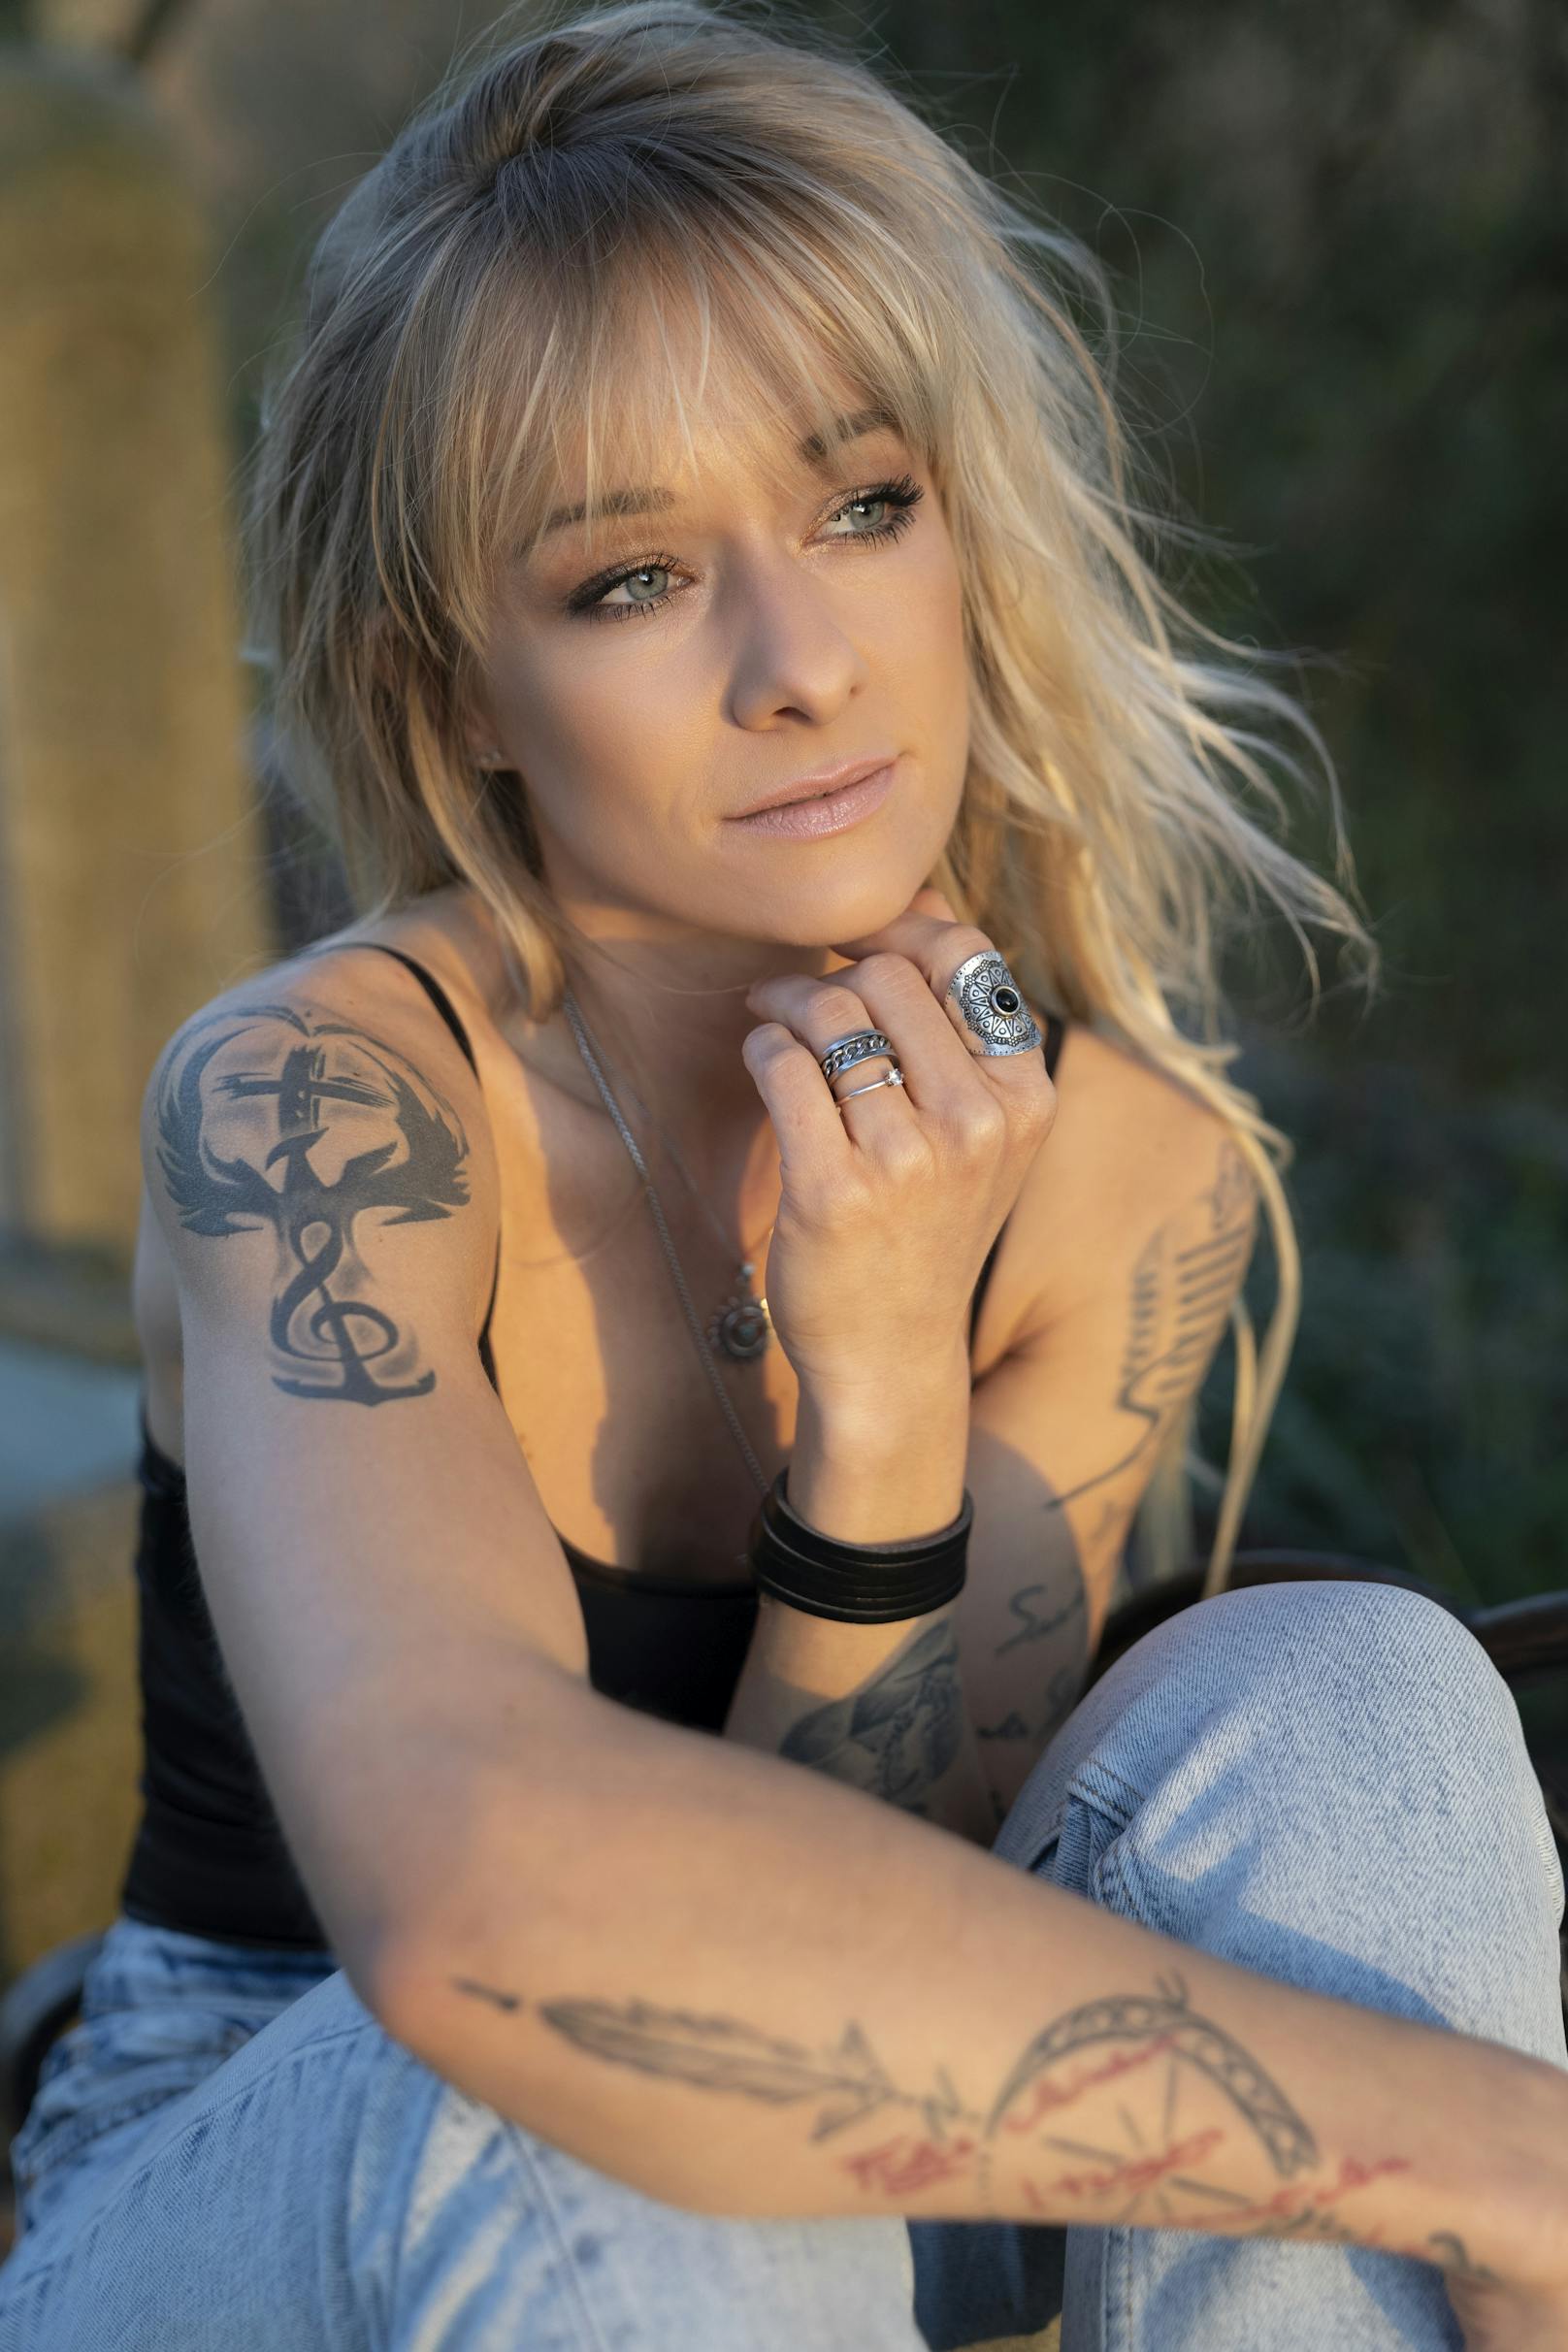 Frau mit starken Tattoos: "Ich bin ein bisschen rebellisch unterwegs, aber mit der Herz am rechten Fleck"